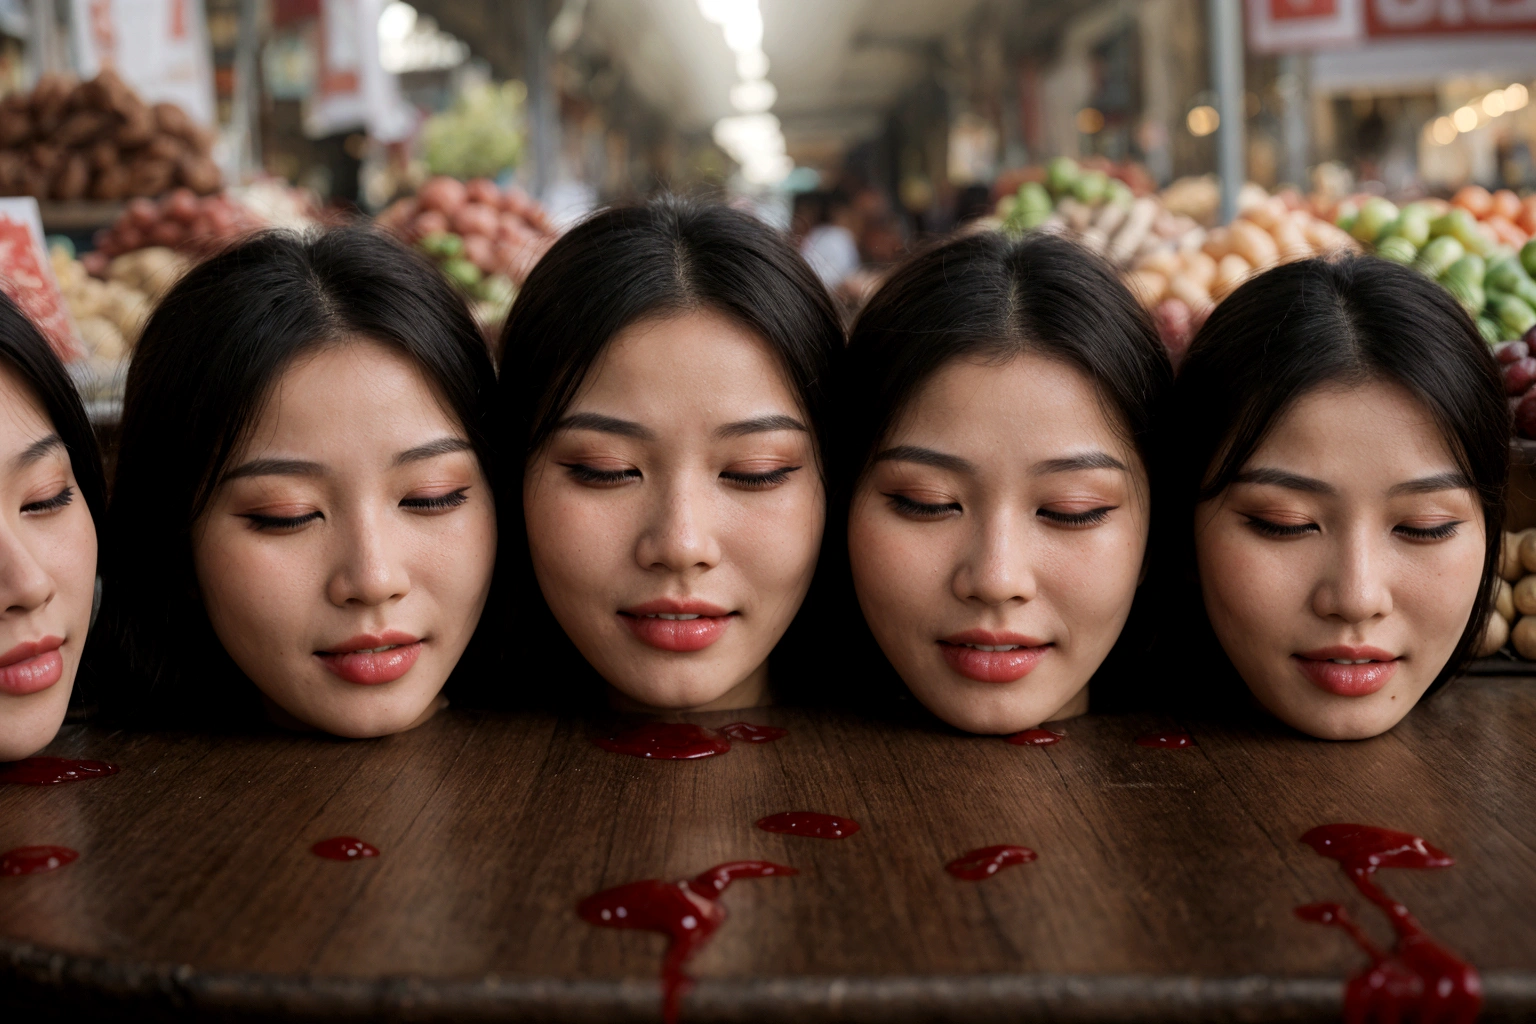 Varias cabezas decapitadas de mujeres hermosas., En una mesa, in a mercado público, lleno de sangre, Sangre fluyendo, ((Ojos cerrados)), sangrado, Fotorrealista, 4k, nikon, horror, mercado público, Hermosa cara asiática, plástico envuelto,